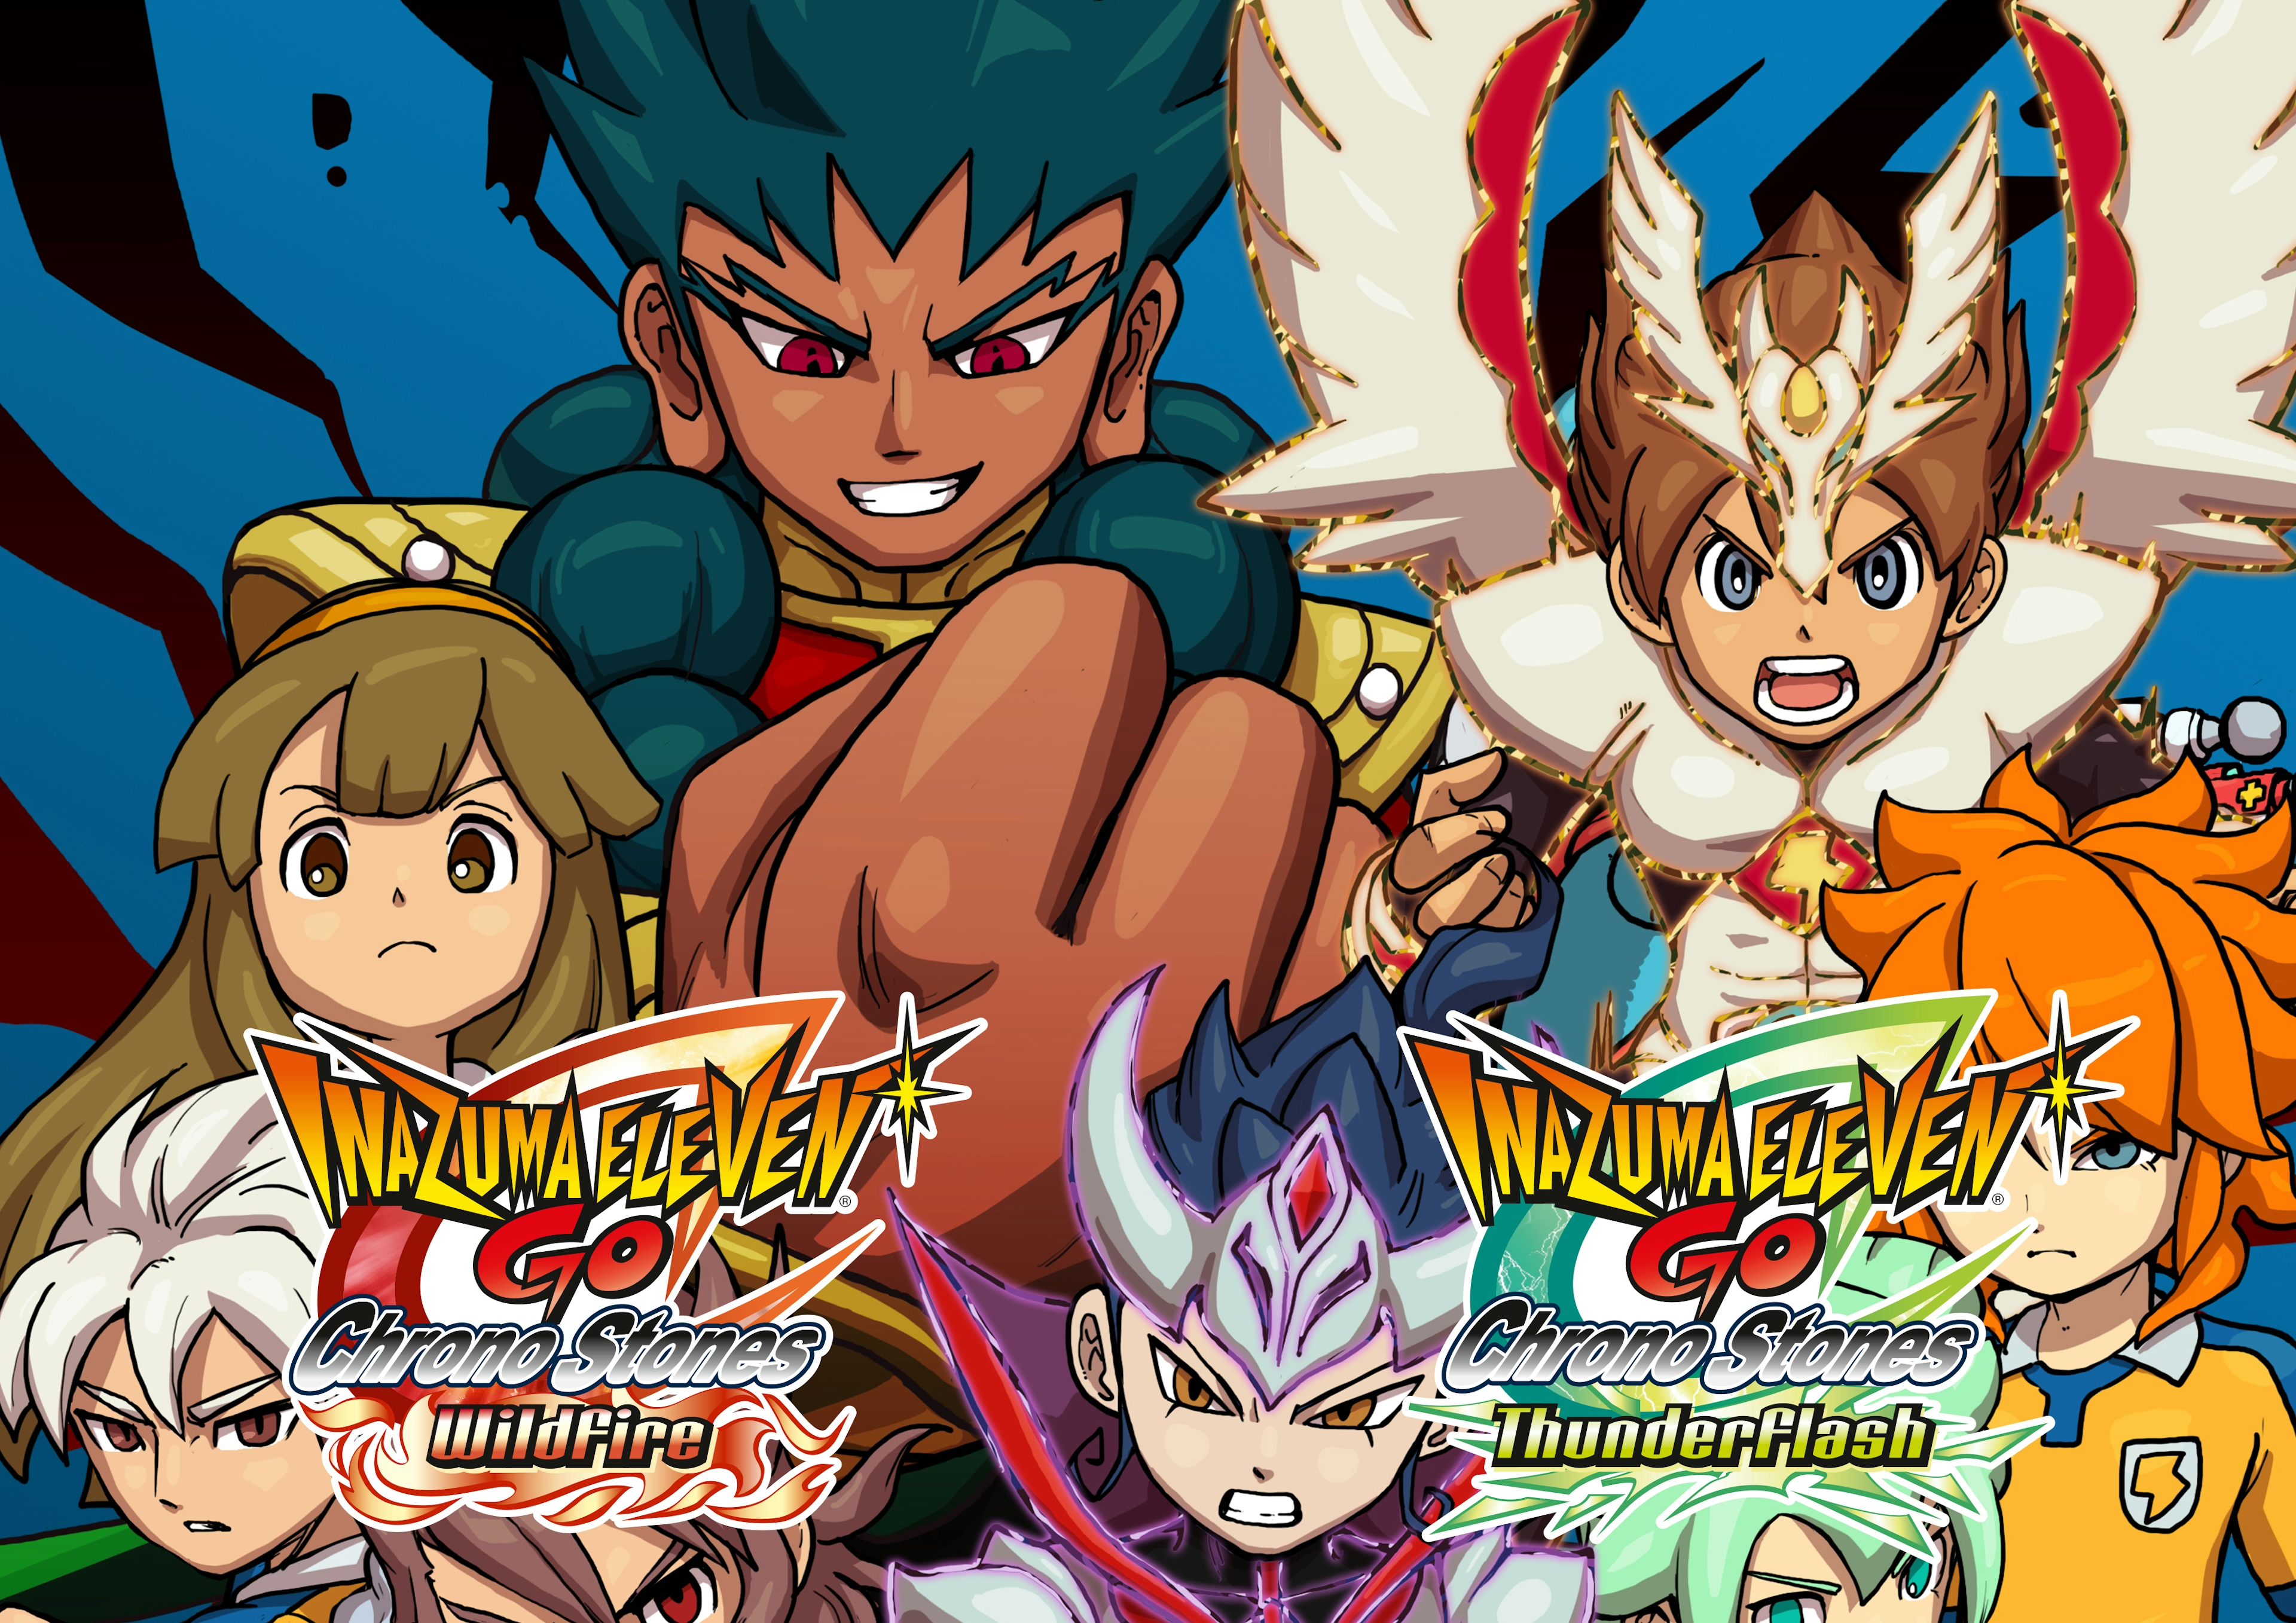 Part 1  Let's Play Inazuma Eleven GO Chrono Stones: Thunderflash